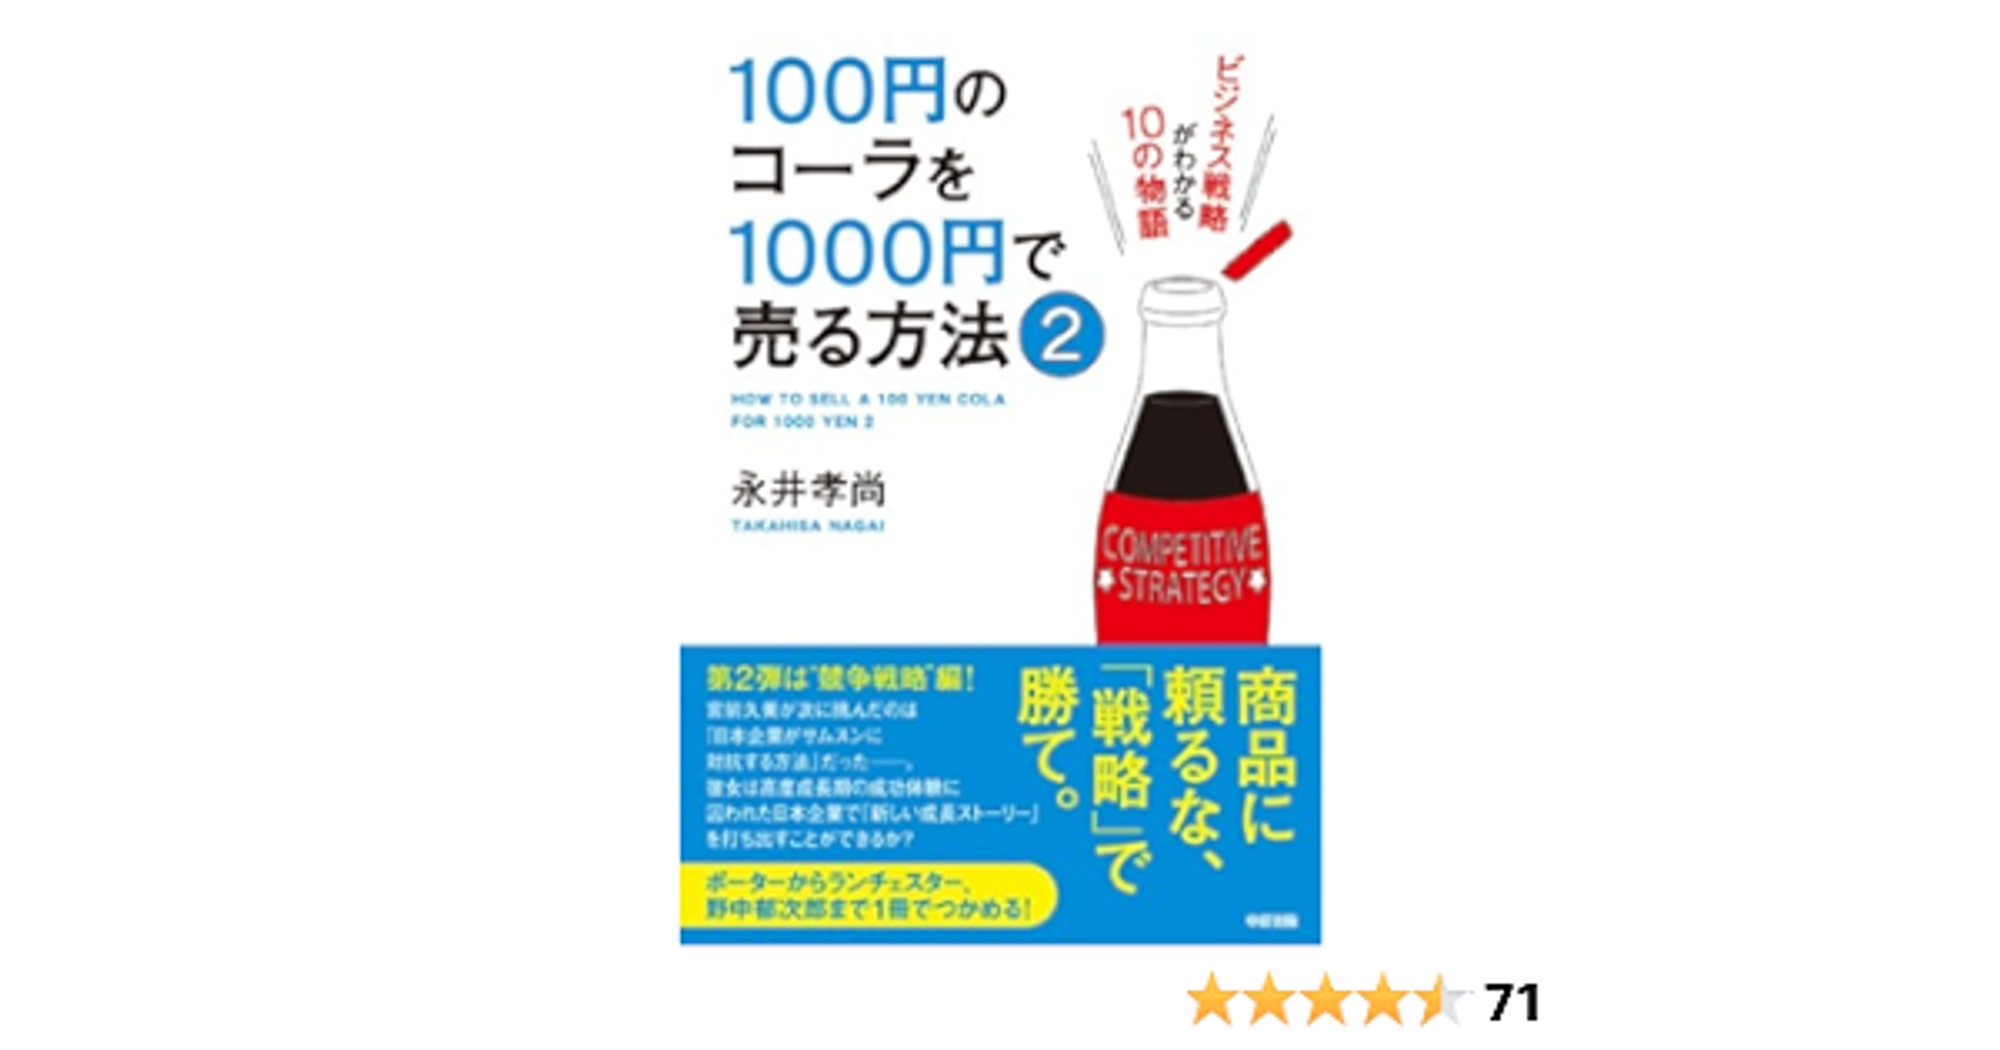 100円のコーラを1000円で売る方法2 (中経出版)